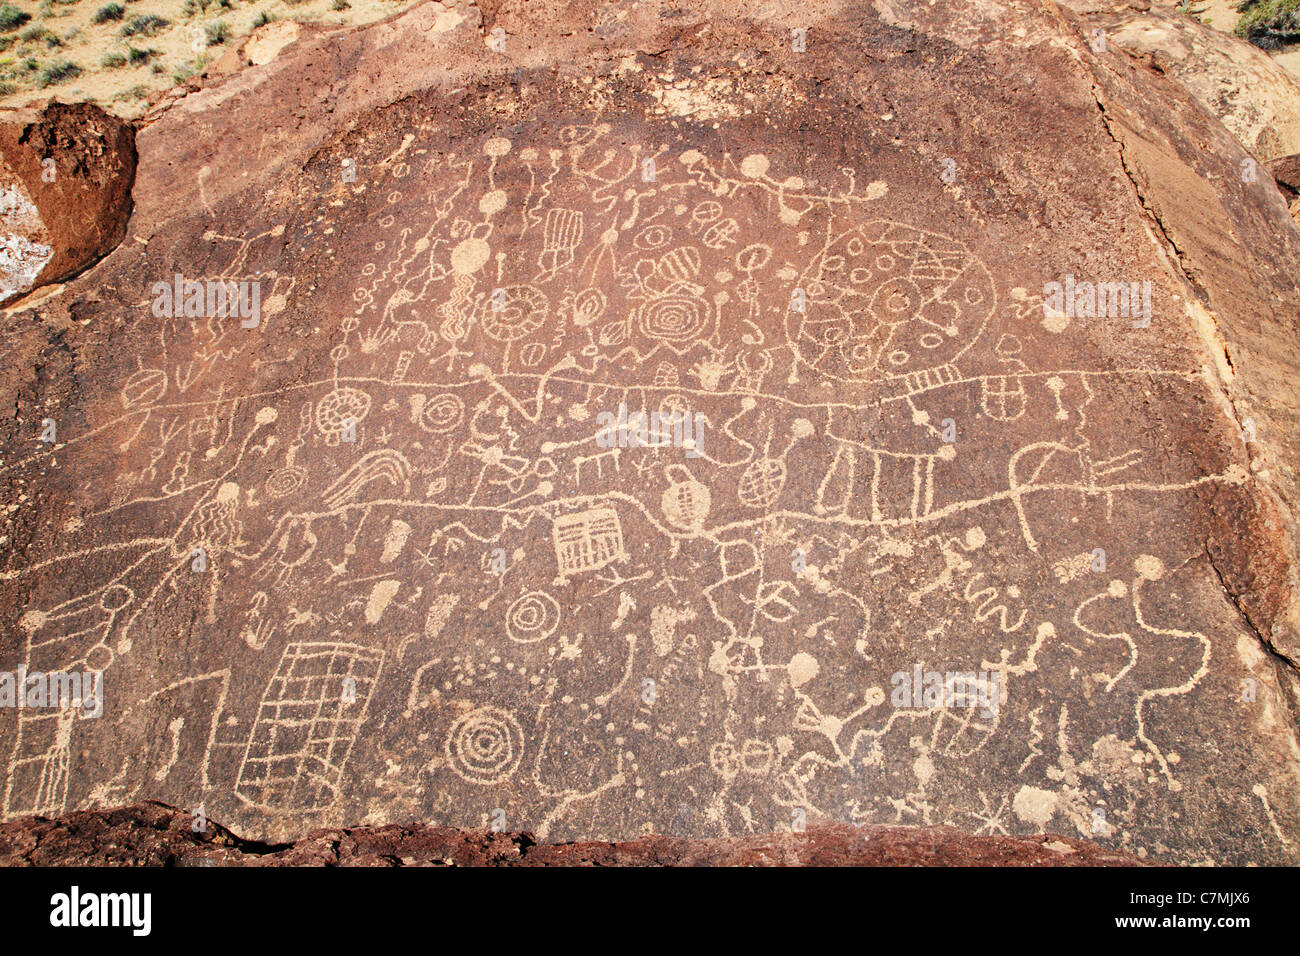 Native American pétroglyphes rupestres creusées dans le tuf volcanique Banque D'Images